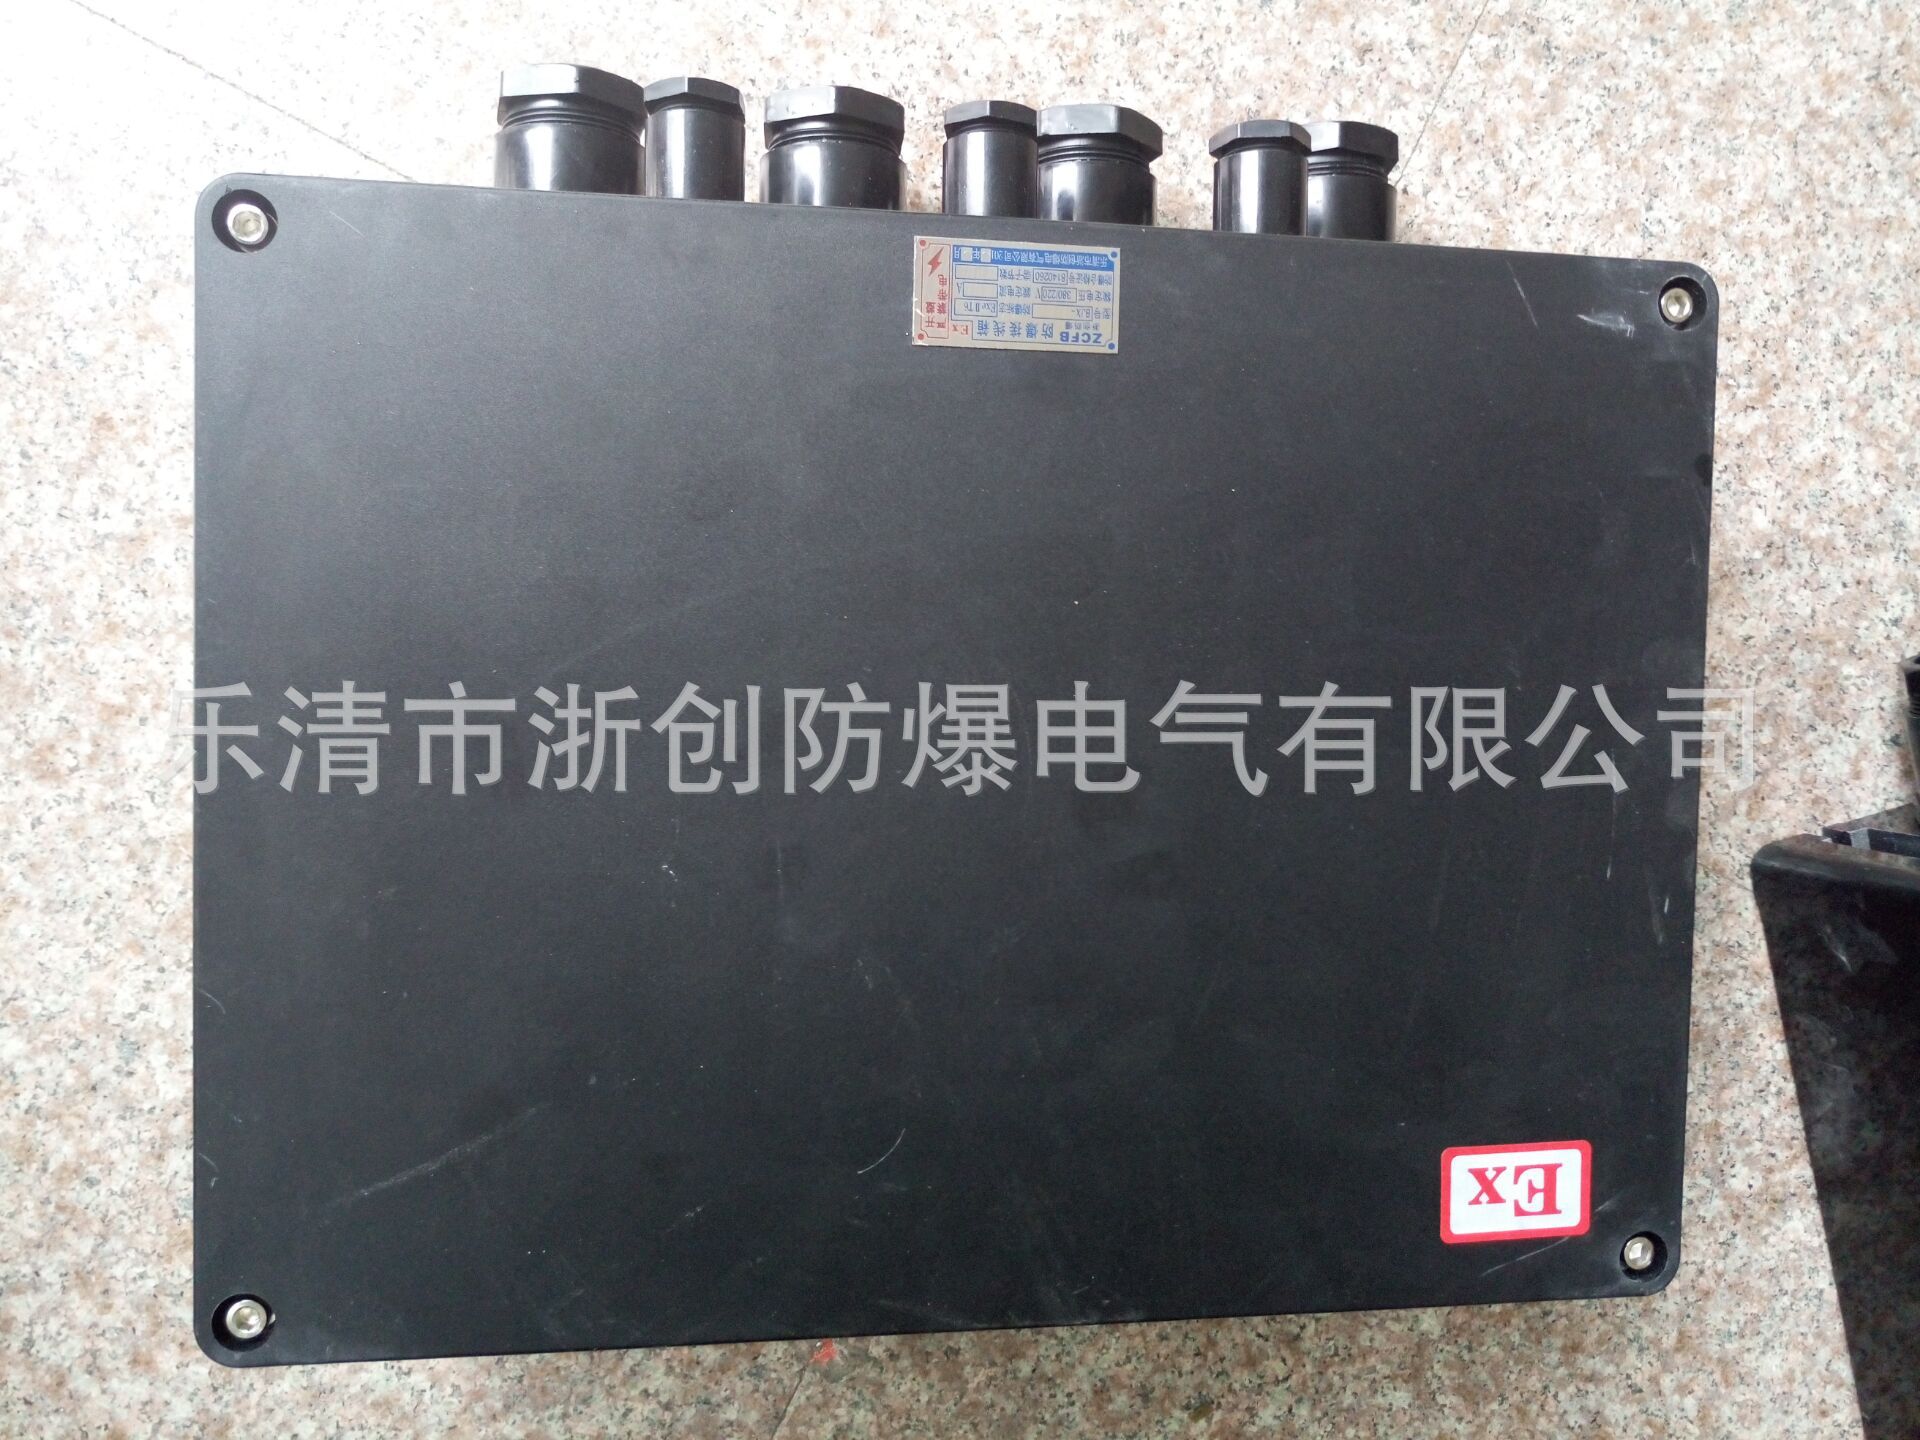 防水防尘防腐接线箱FXJ-20/8,20A电流